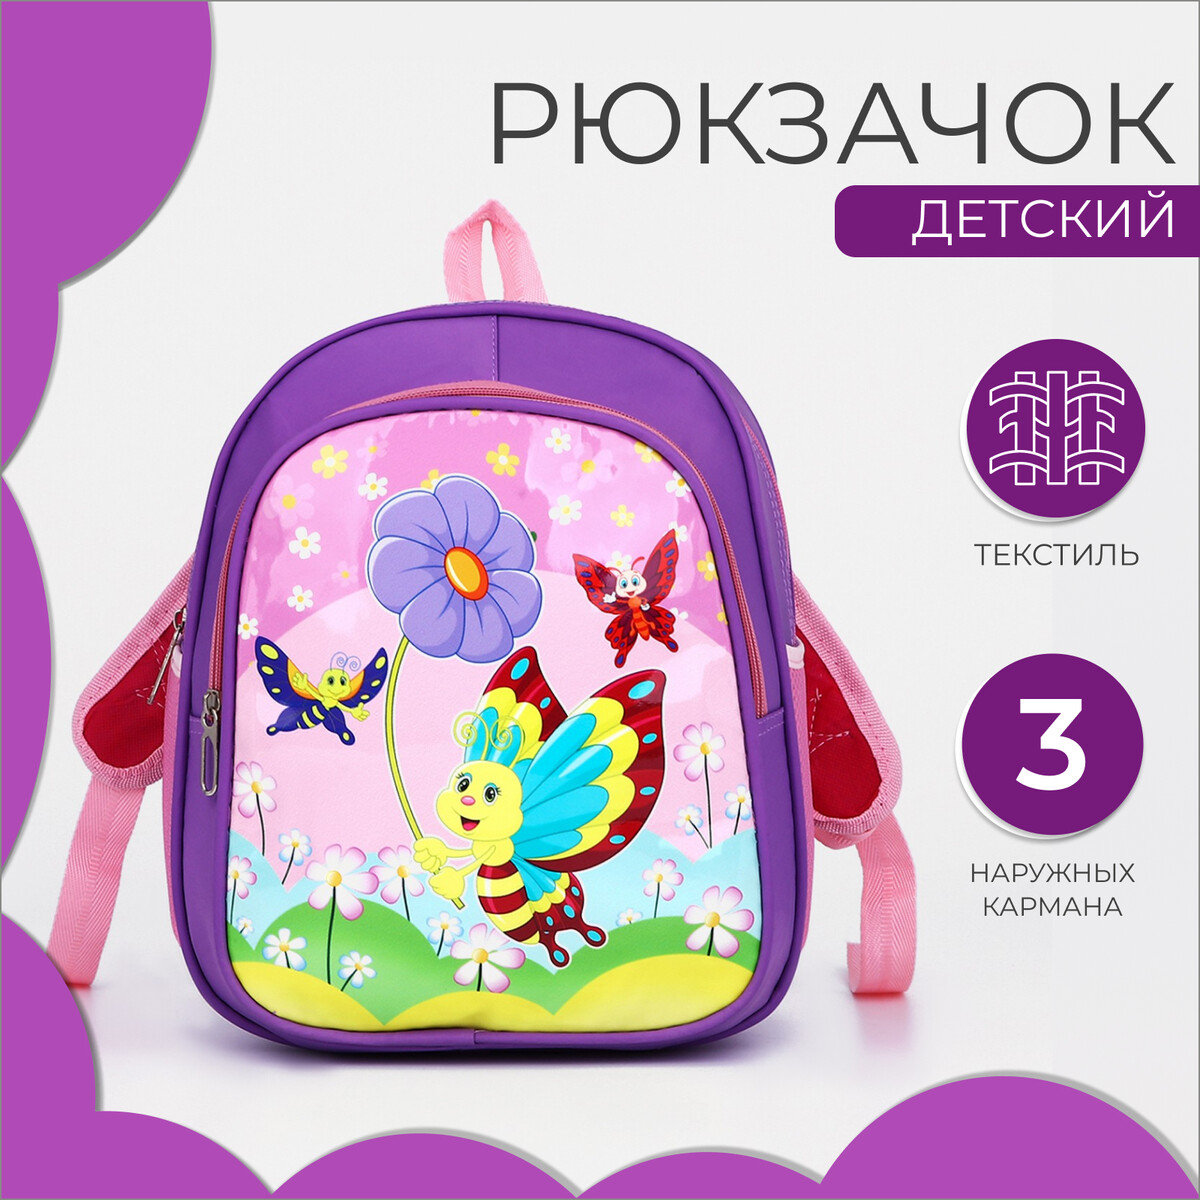 Рюкзак детский на молнии, 3 наружных кармана, цвет фиолетовый детский назальный аспиратор фиолетовый